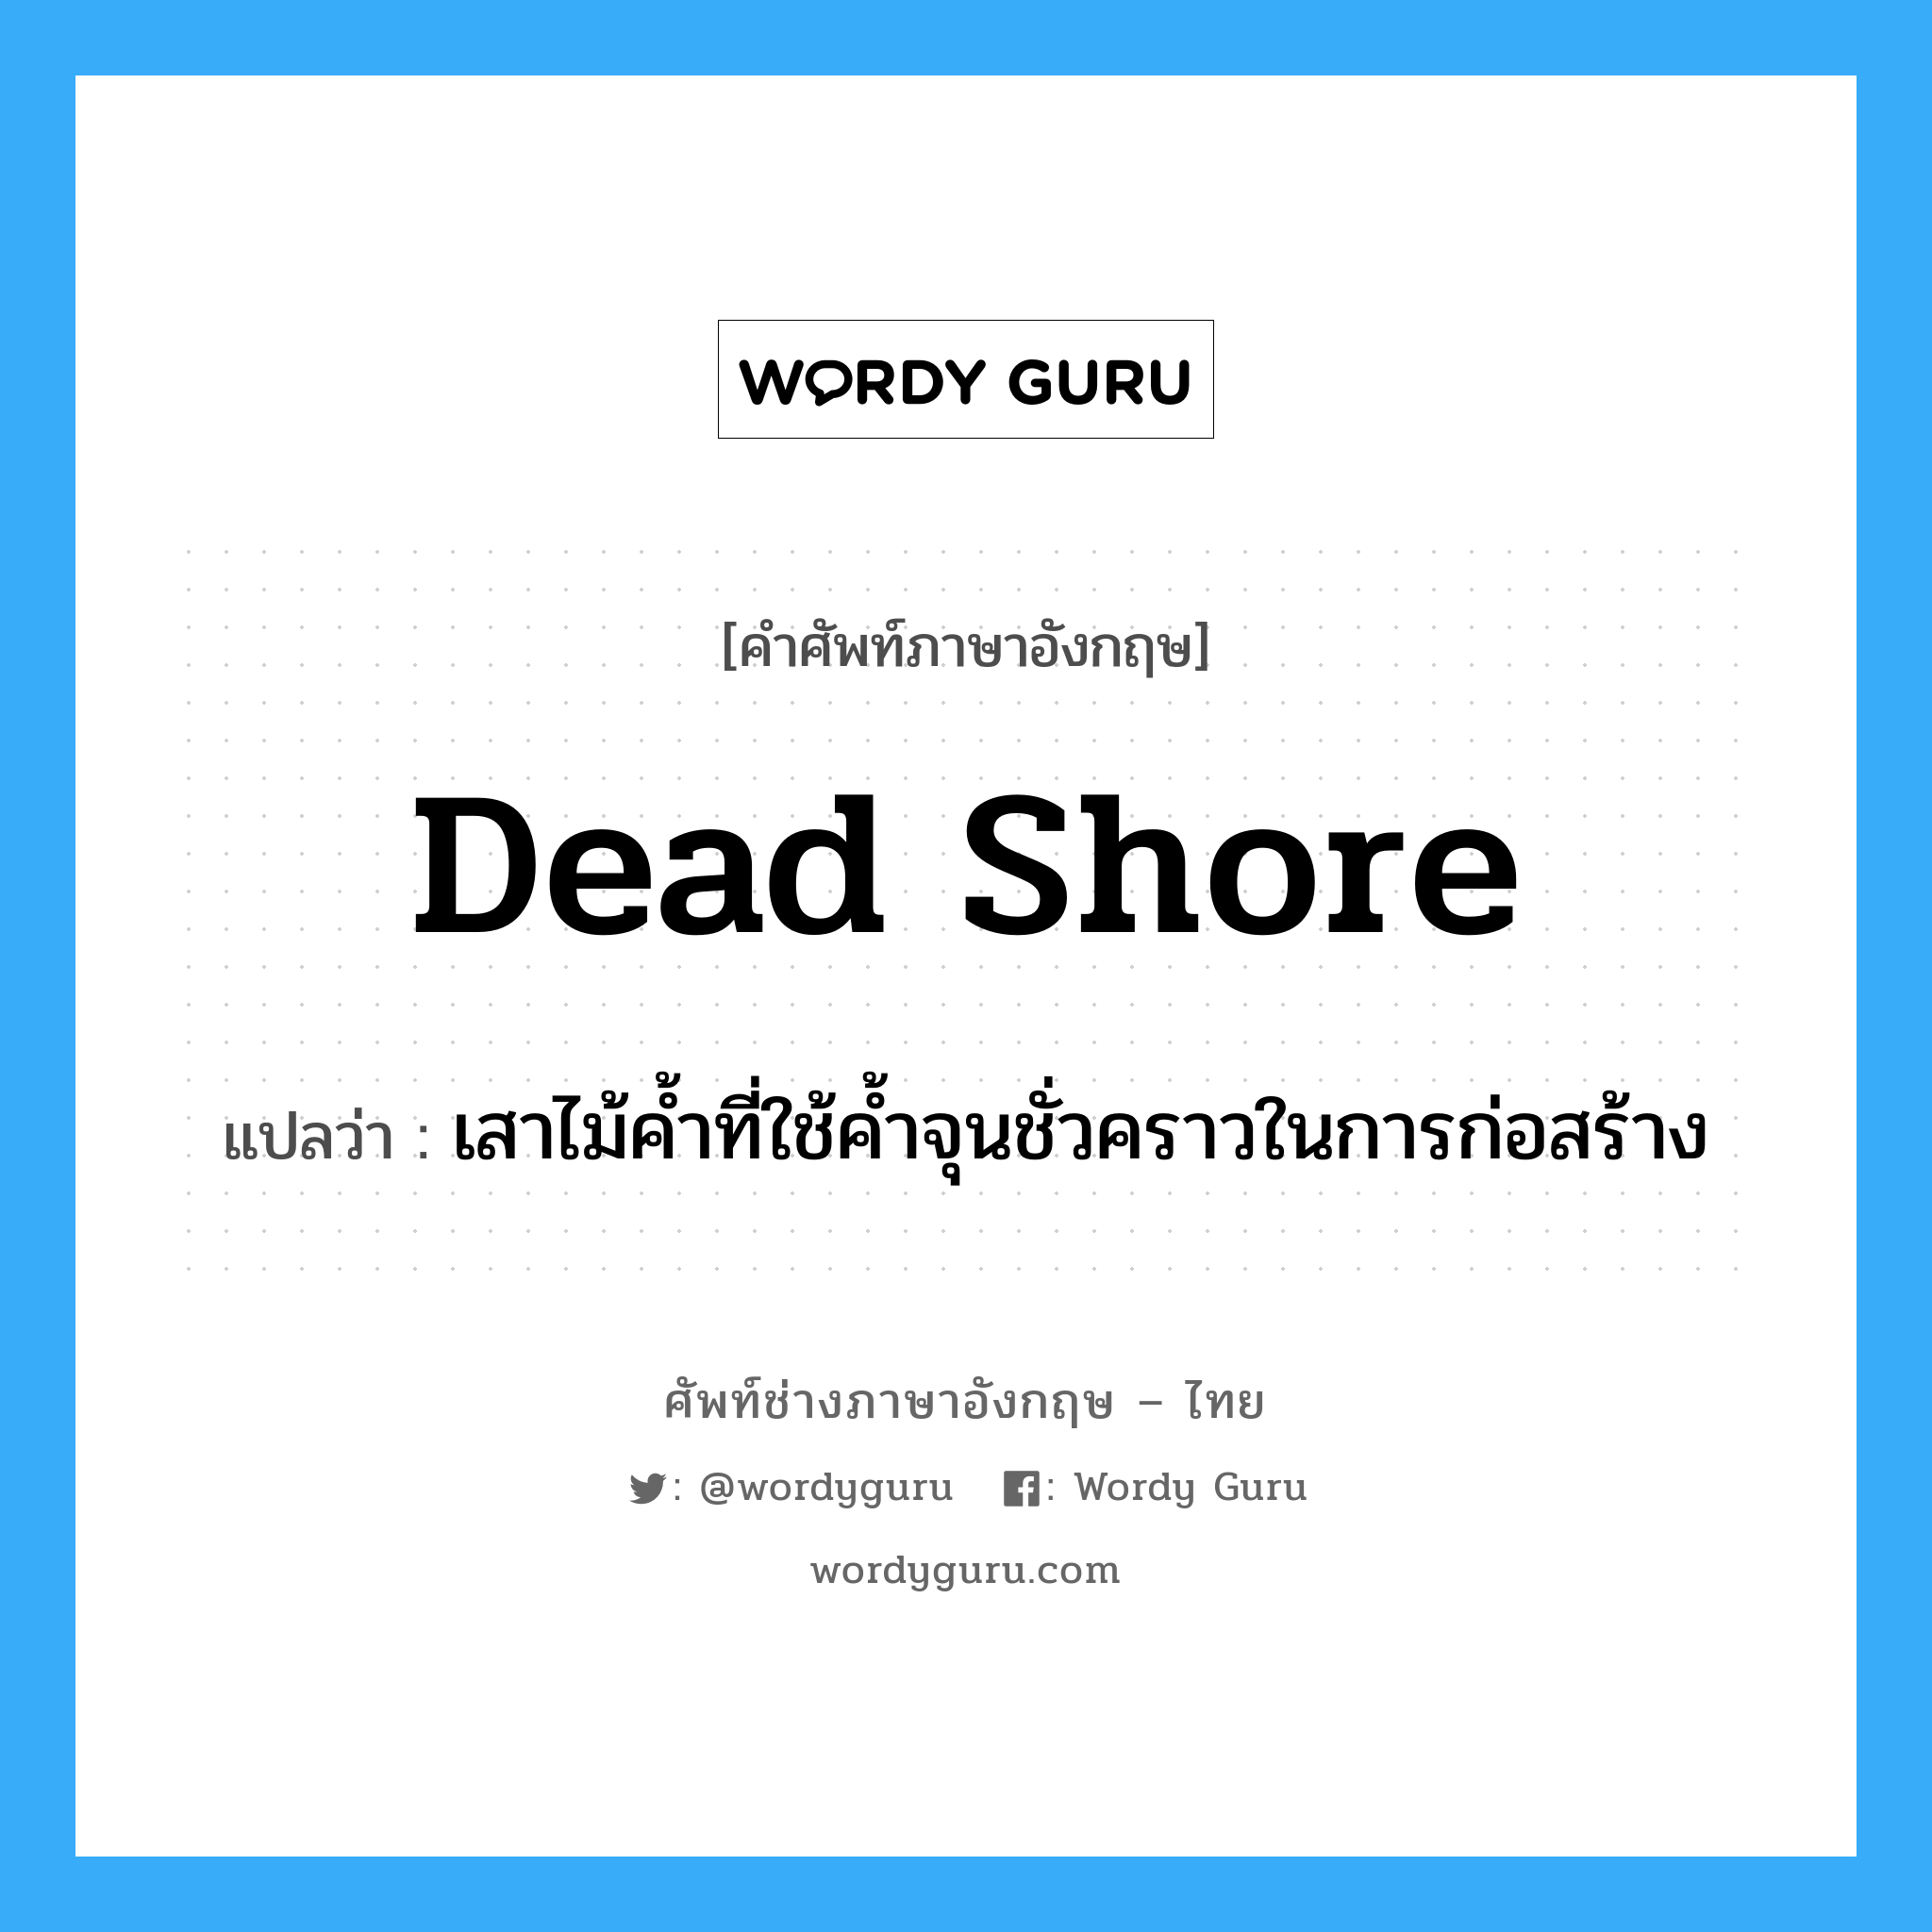 dead shore แปลว่า?, คำศัพท์ช่างภาษาอังกฤษ - ไทย dead shore คำศัพท์ภาษาอังกฤษ dead shore แปลว่า เสาไม้ค้ำที่ใช้ค้ำจุนชั่วคราวในการก่อสร้าง